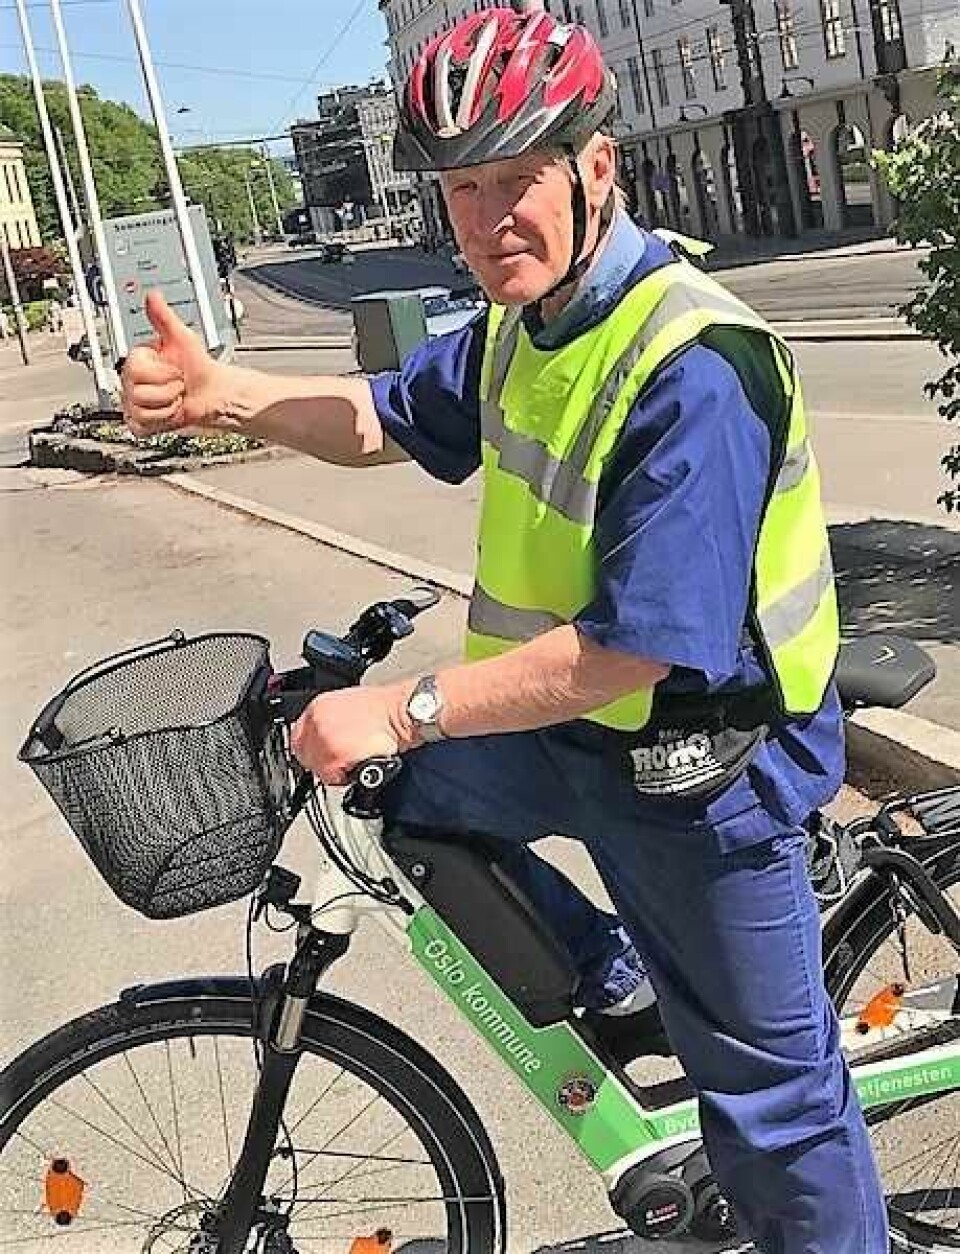 Sykepleier Jon Skaro er godt fornøyd med å bruke elsykkel på jobb. Foto: Bydel Frogner